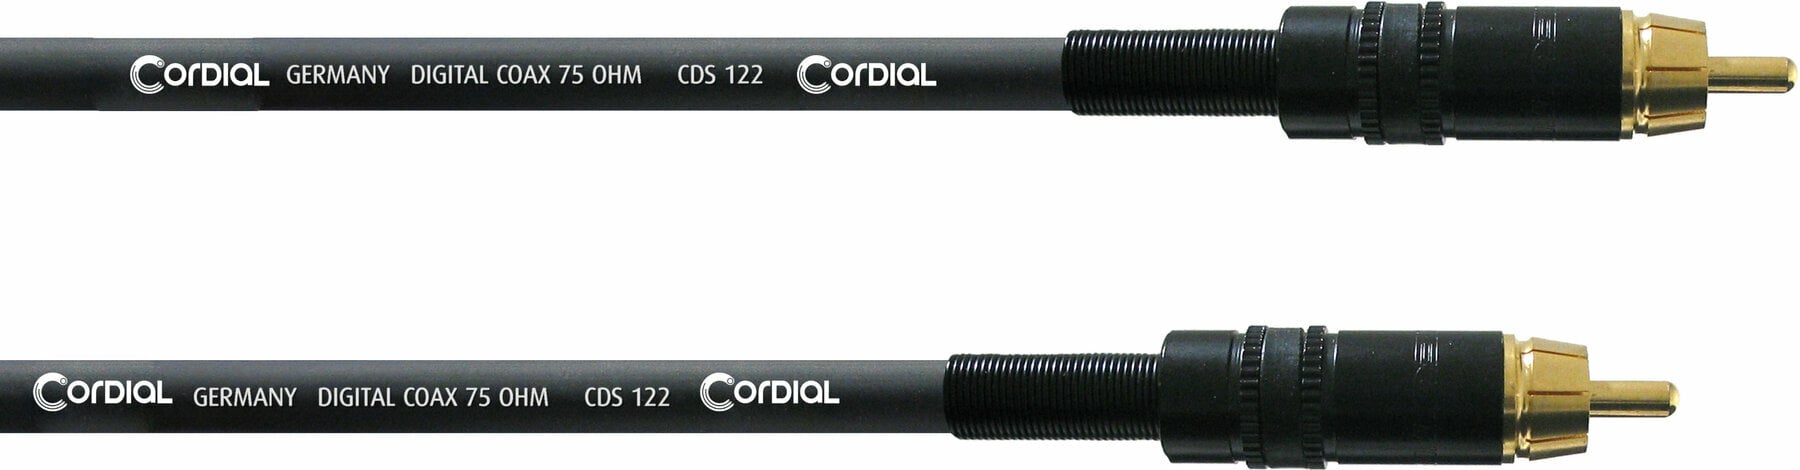 Audió kábel Cordial CPDS 2 CC 2 m Audió kábel